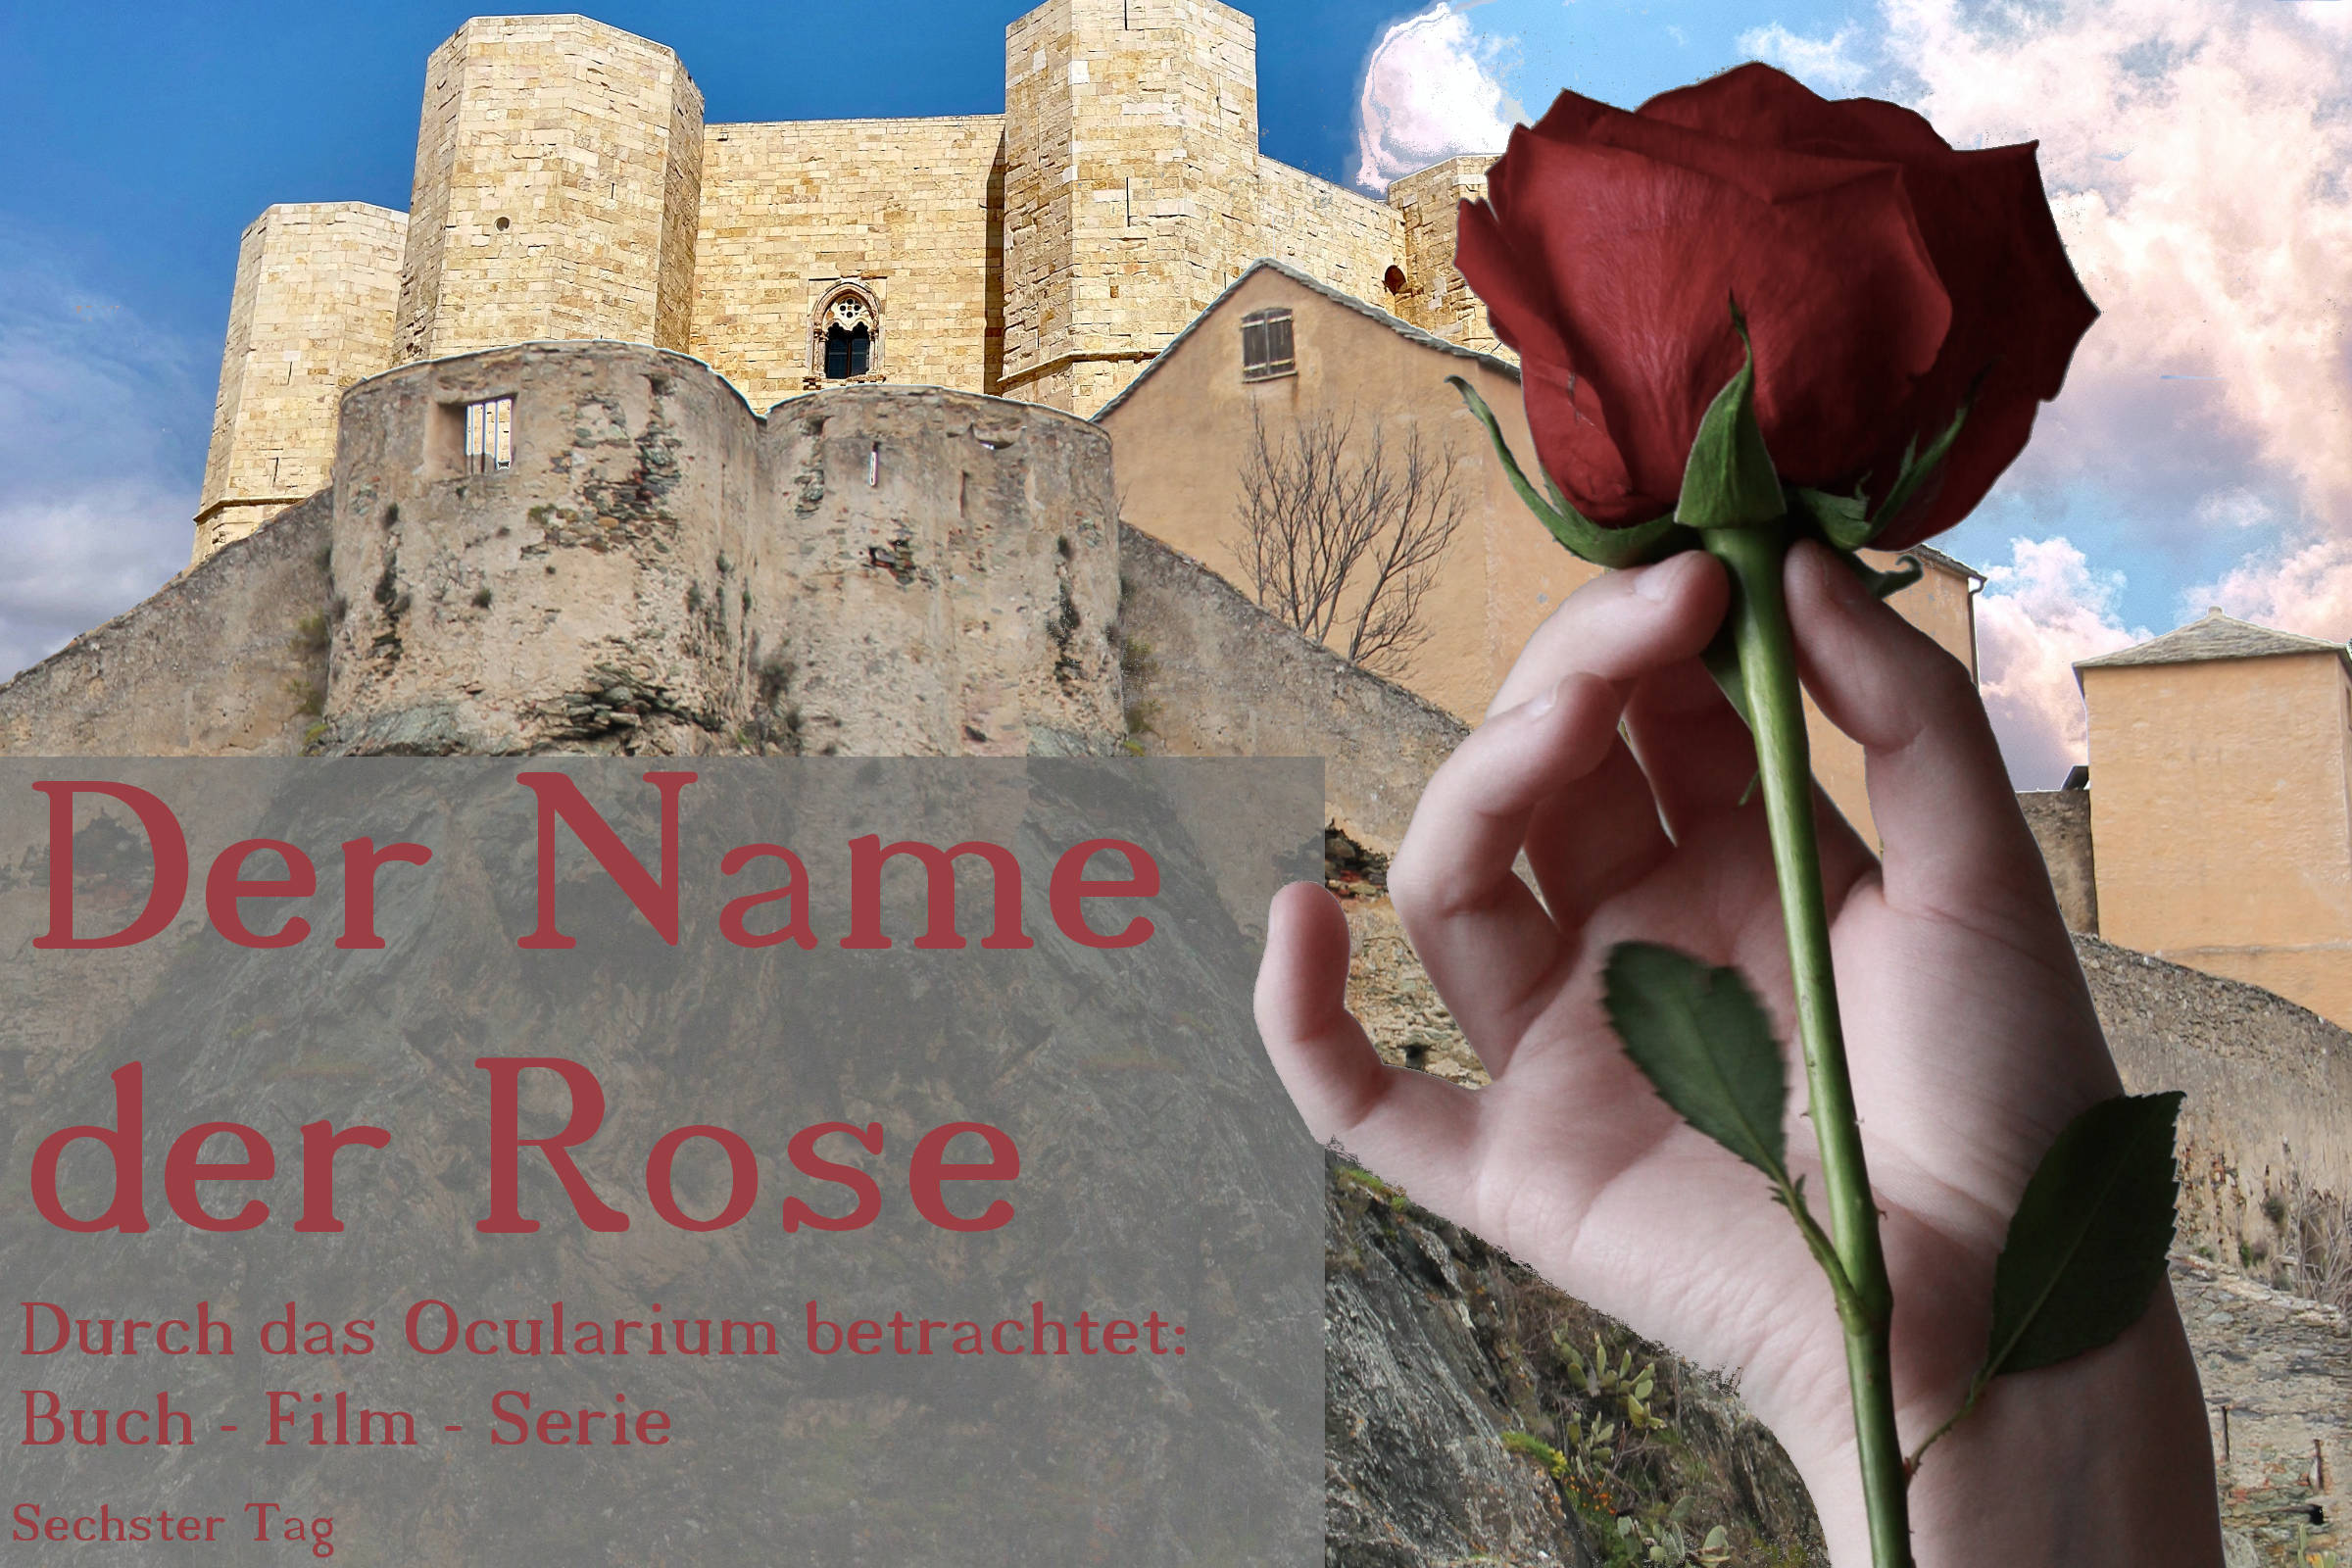 Der Name der Rose – Durch das Ocularium betrachtet: Buch – Film – Serie | Sechster Tag